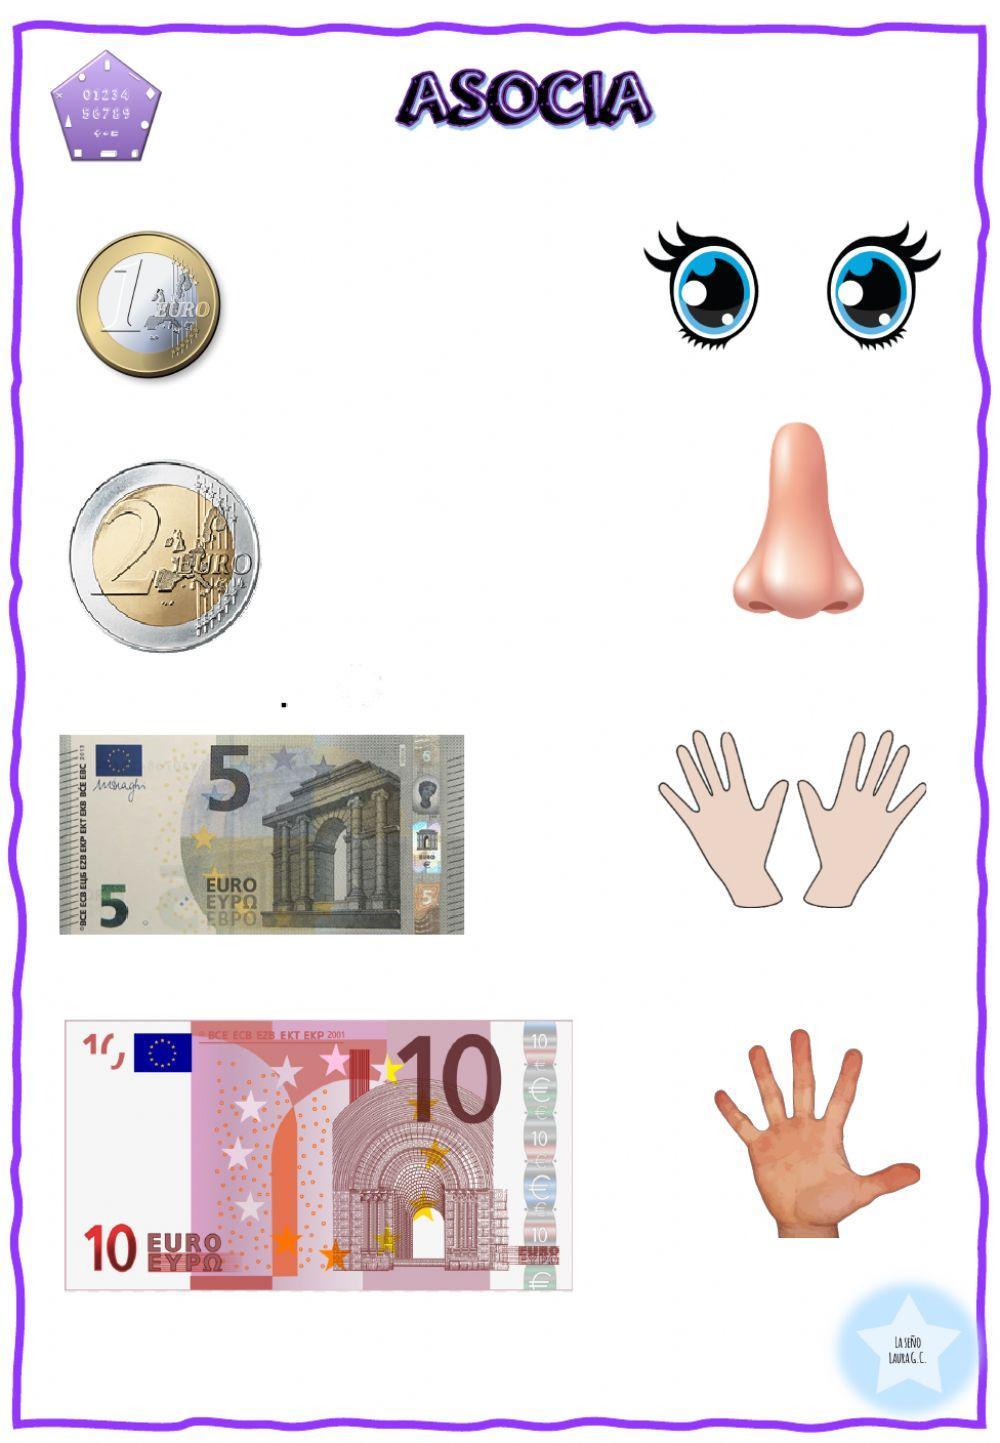 Asocia euros